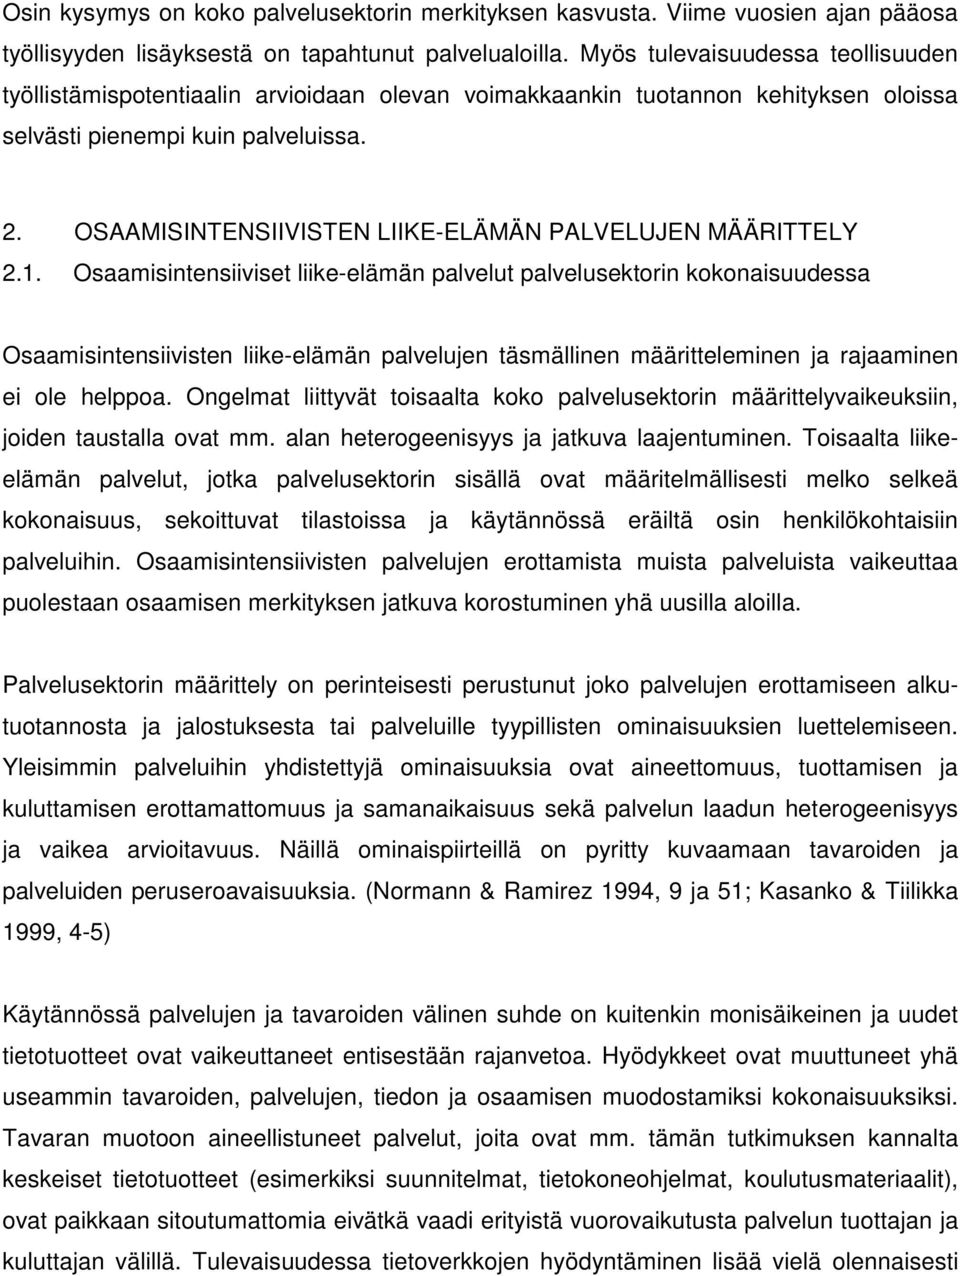 OSAAMISINTENSIIVISTEN LIIKE-ELÄMÄN PALVELUJEN MÄÄRITTELY 2.1.